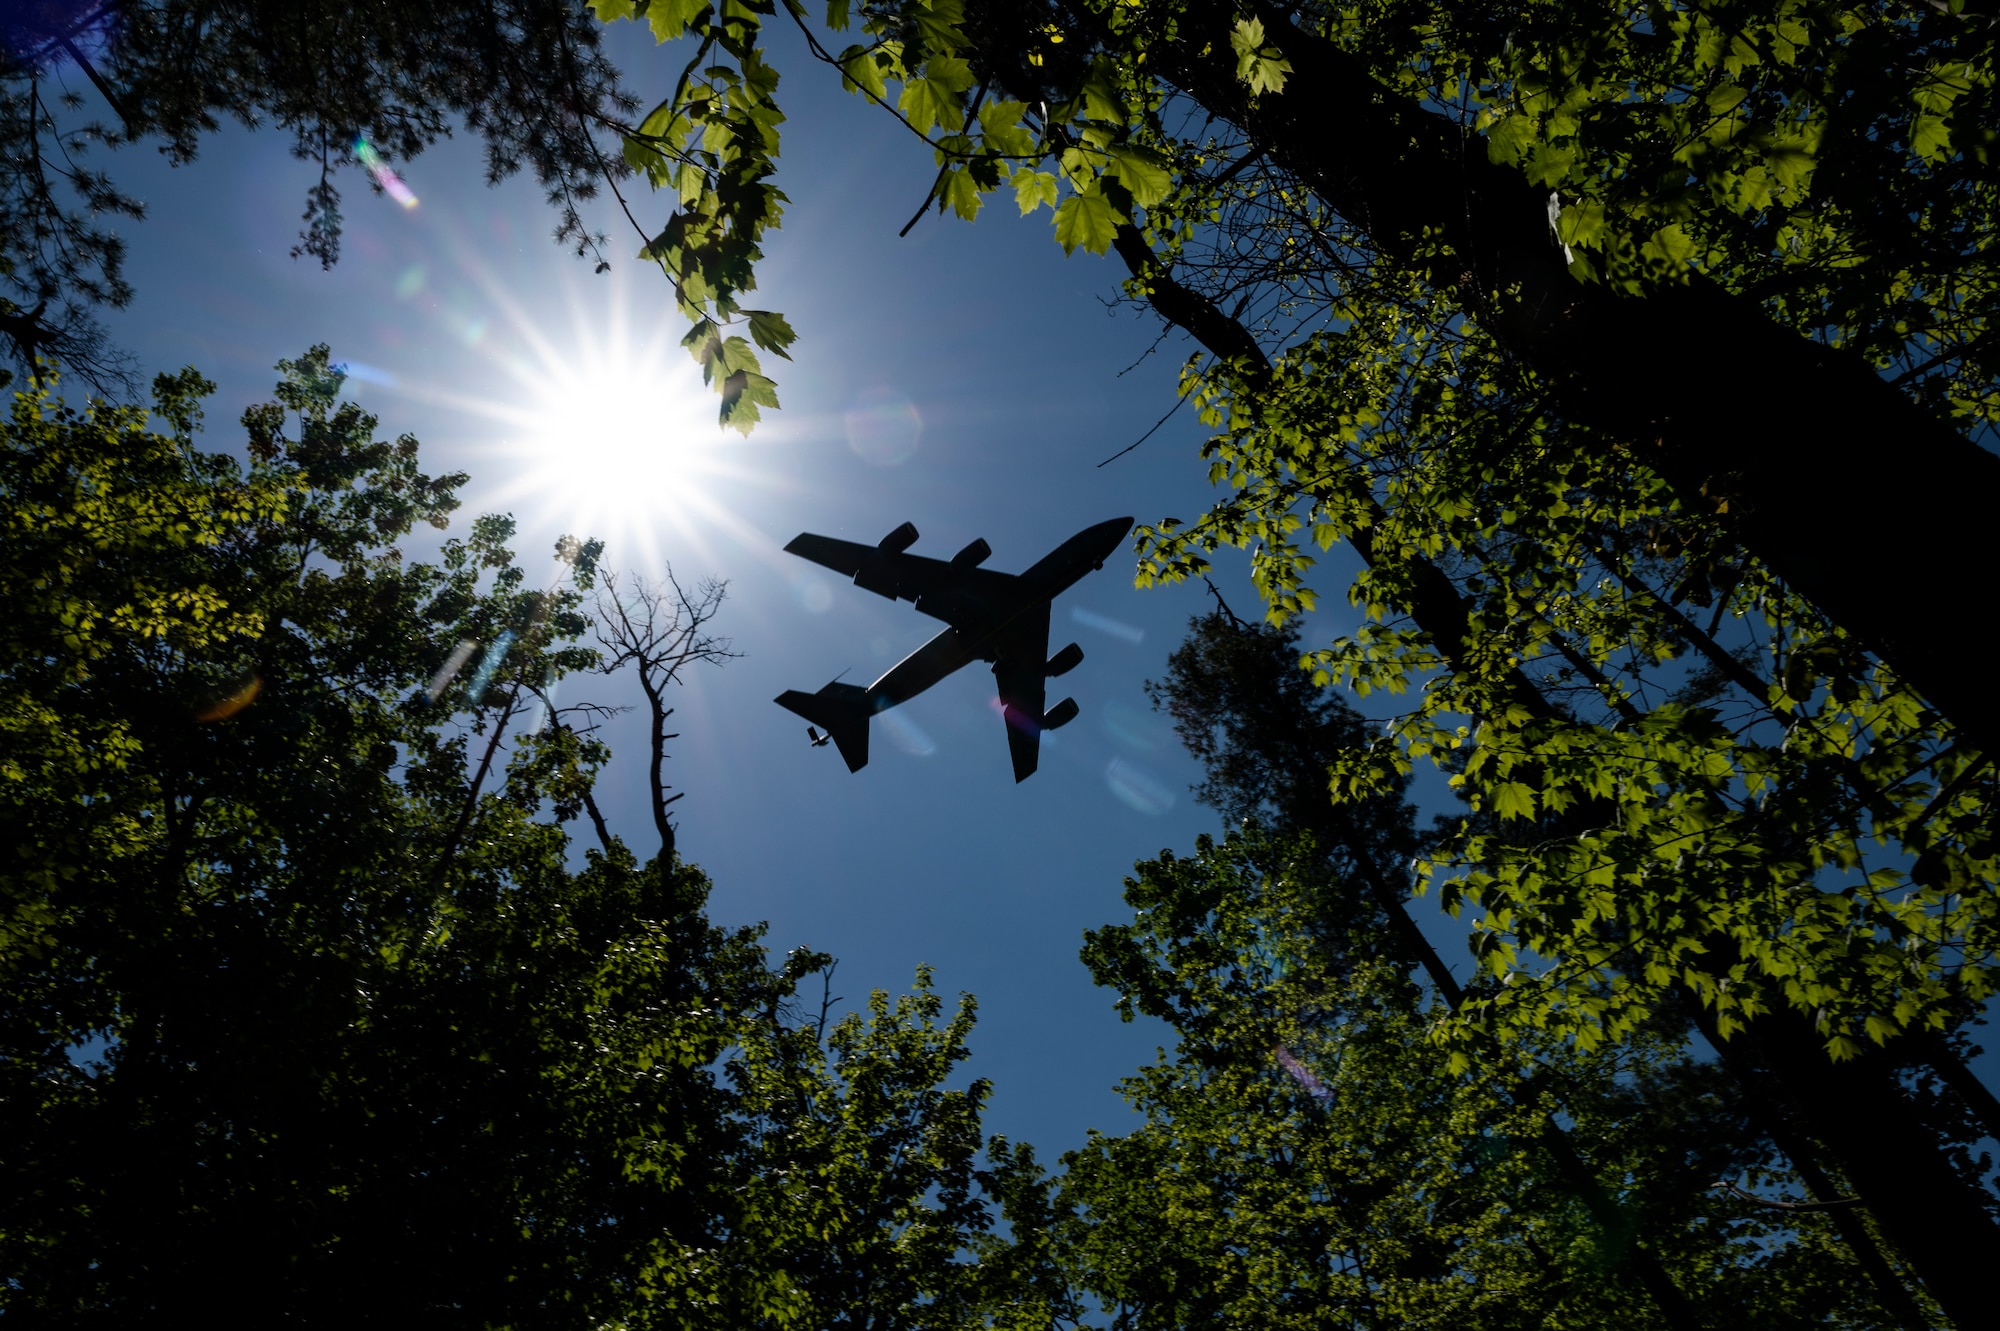 A KC-135 Stratotanker flies over a park